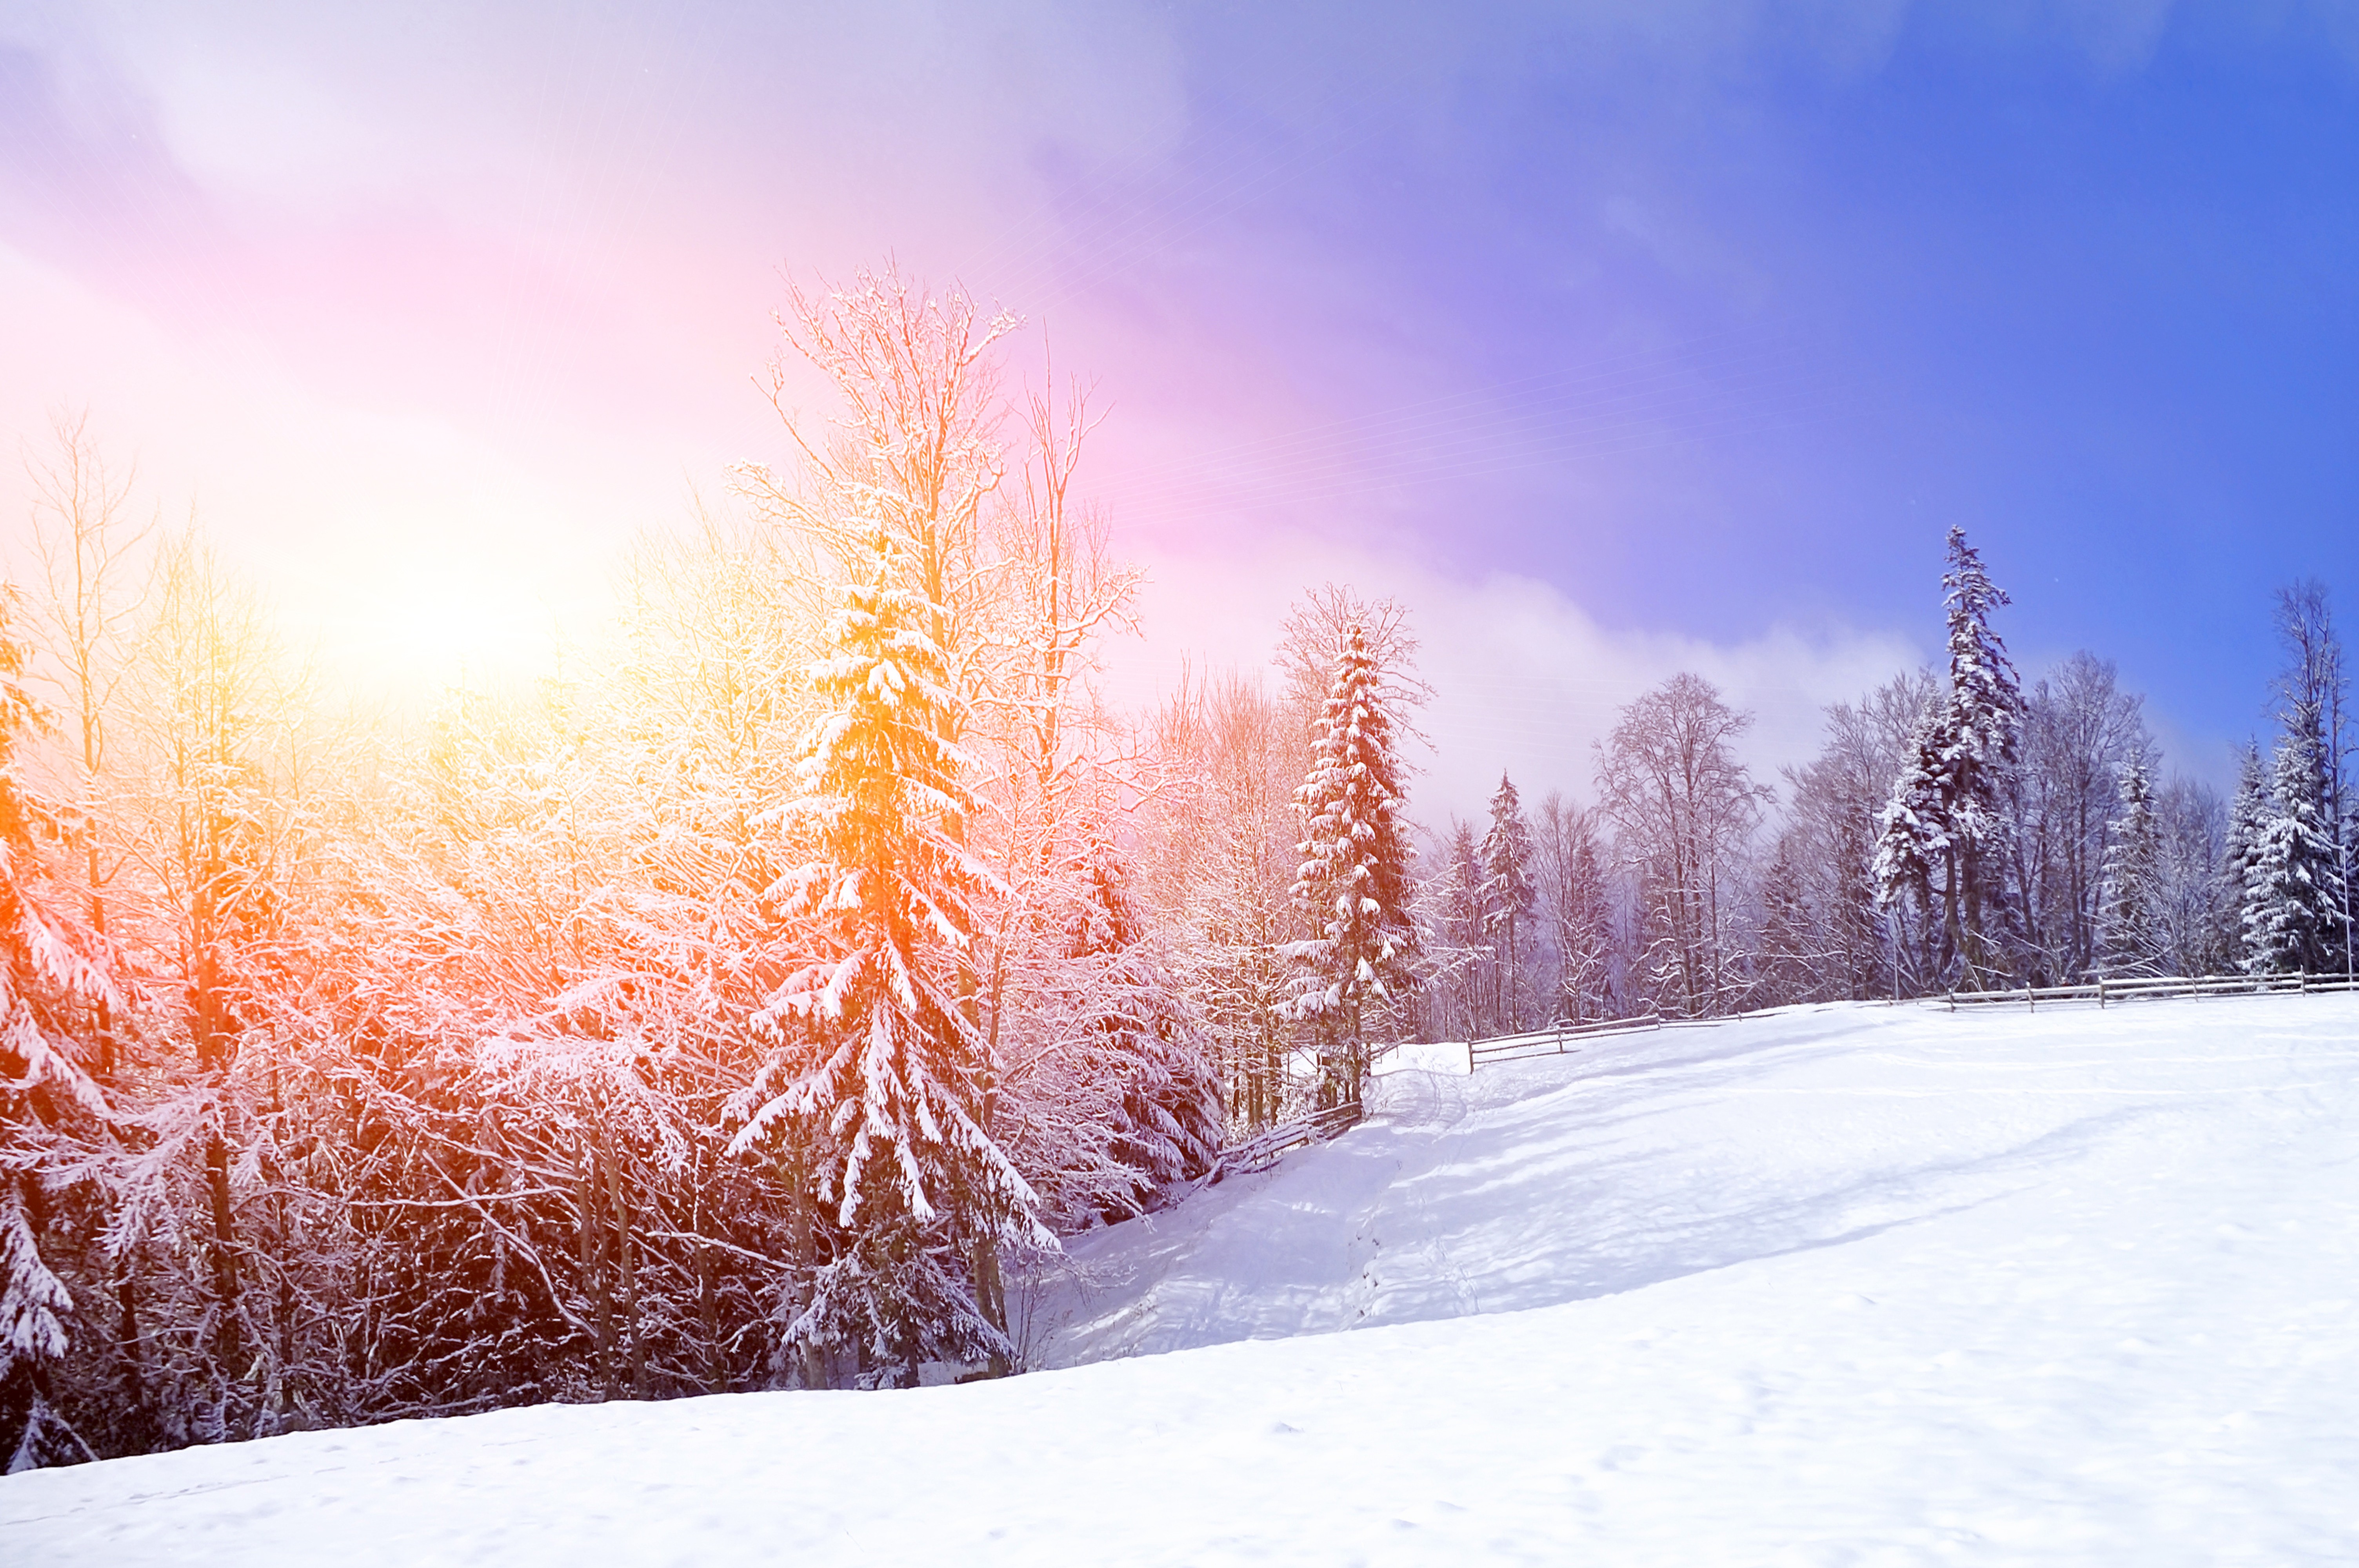 Peaceful winter landscape photo